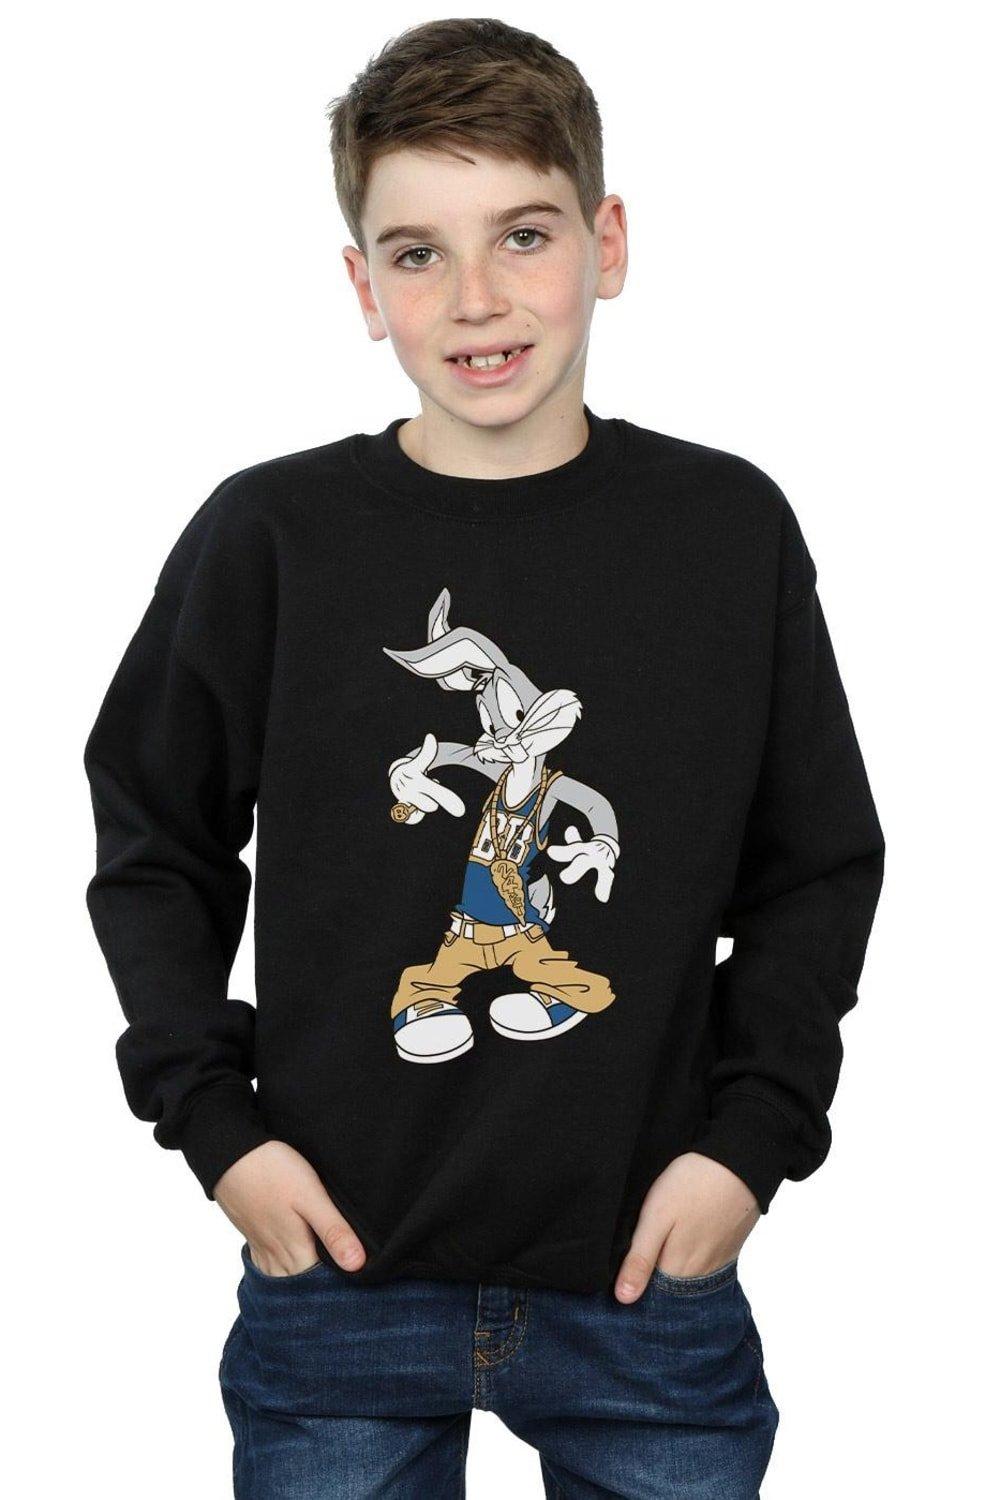 Bugs Bunny Rapper Sweatshirt